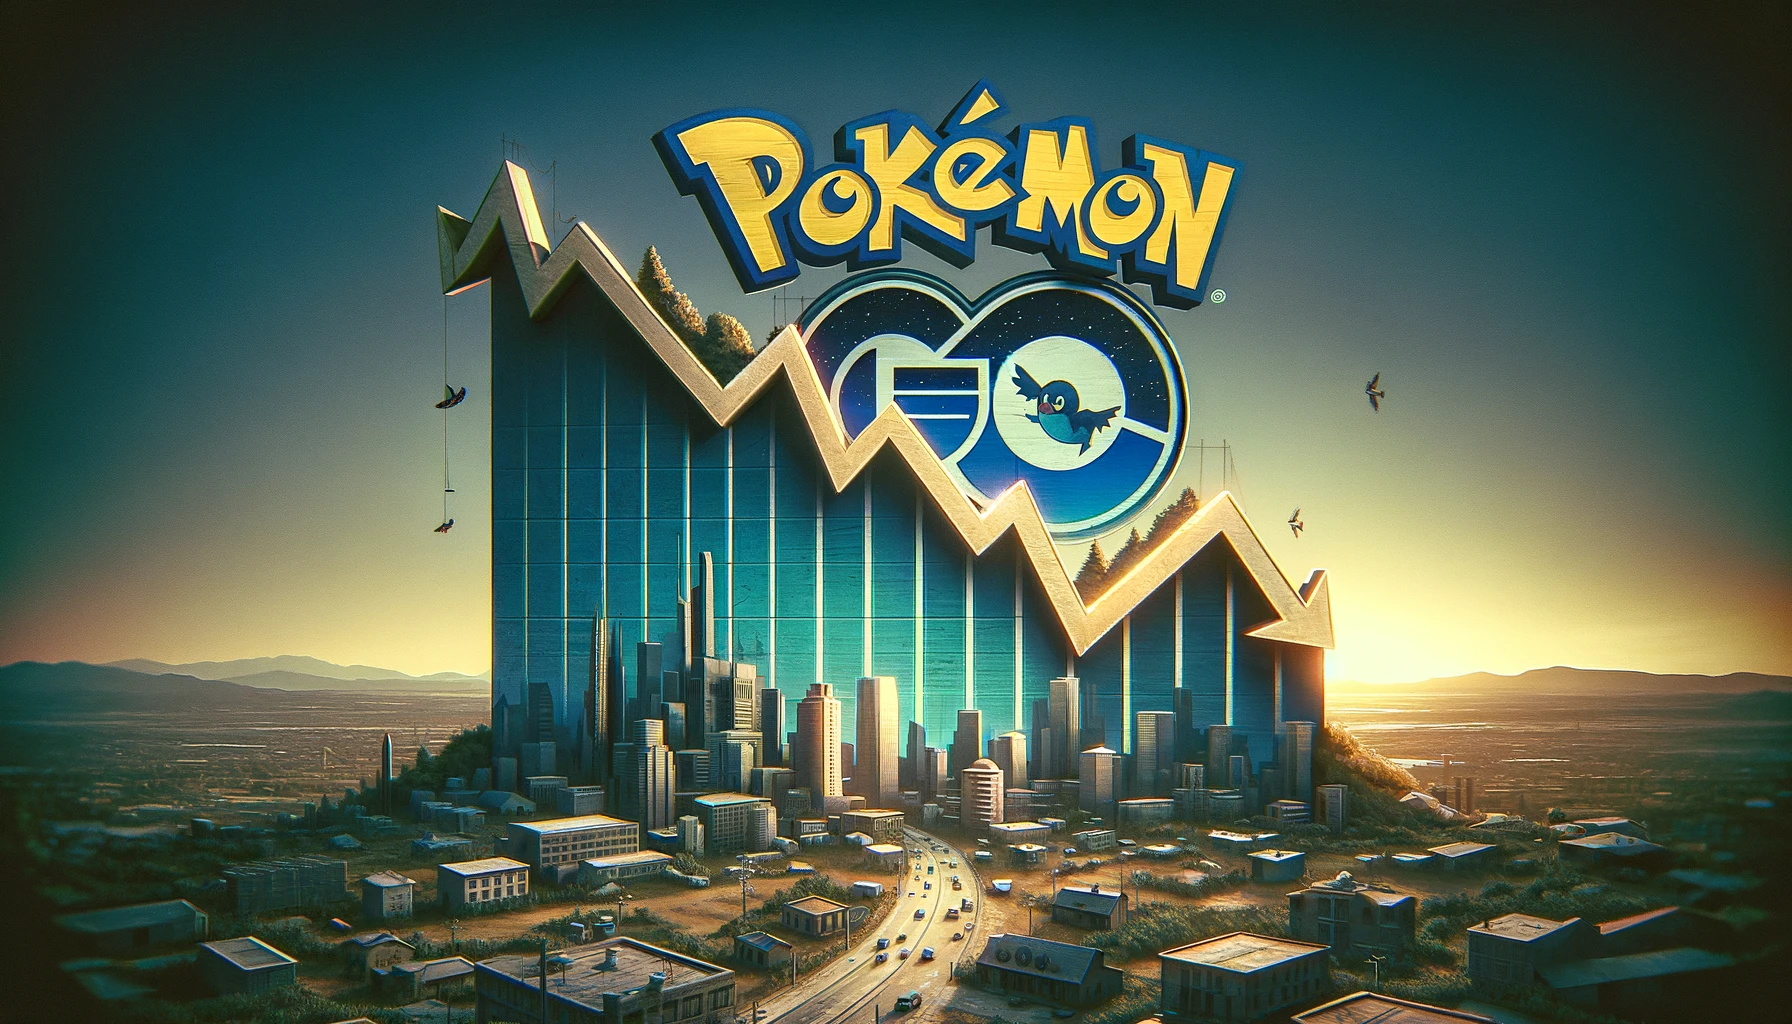 Pokemon GO Faces Unprecedented Revenue Decline in Latest Financial Year